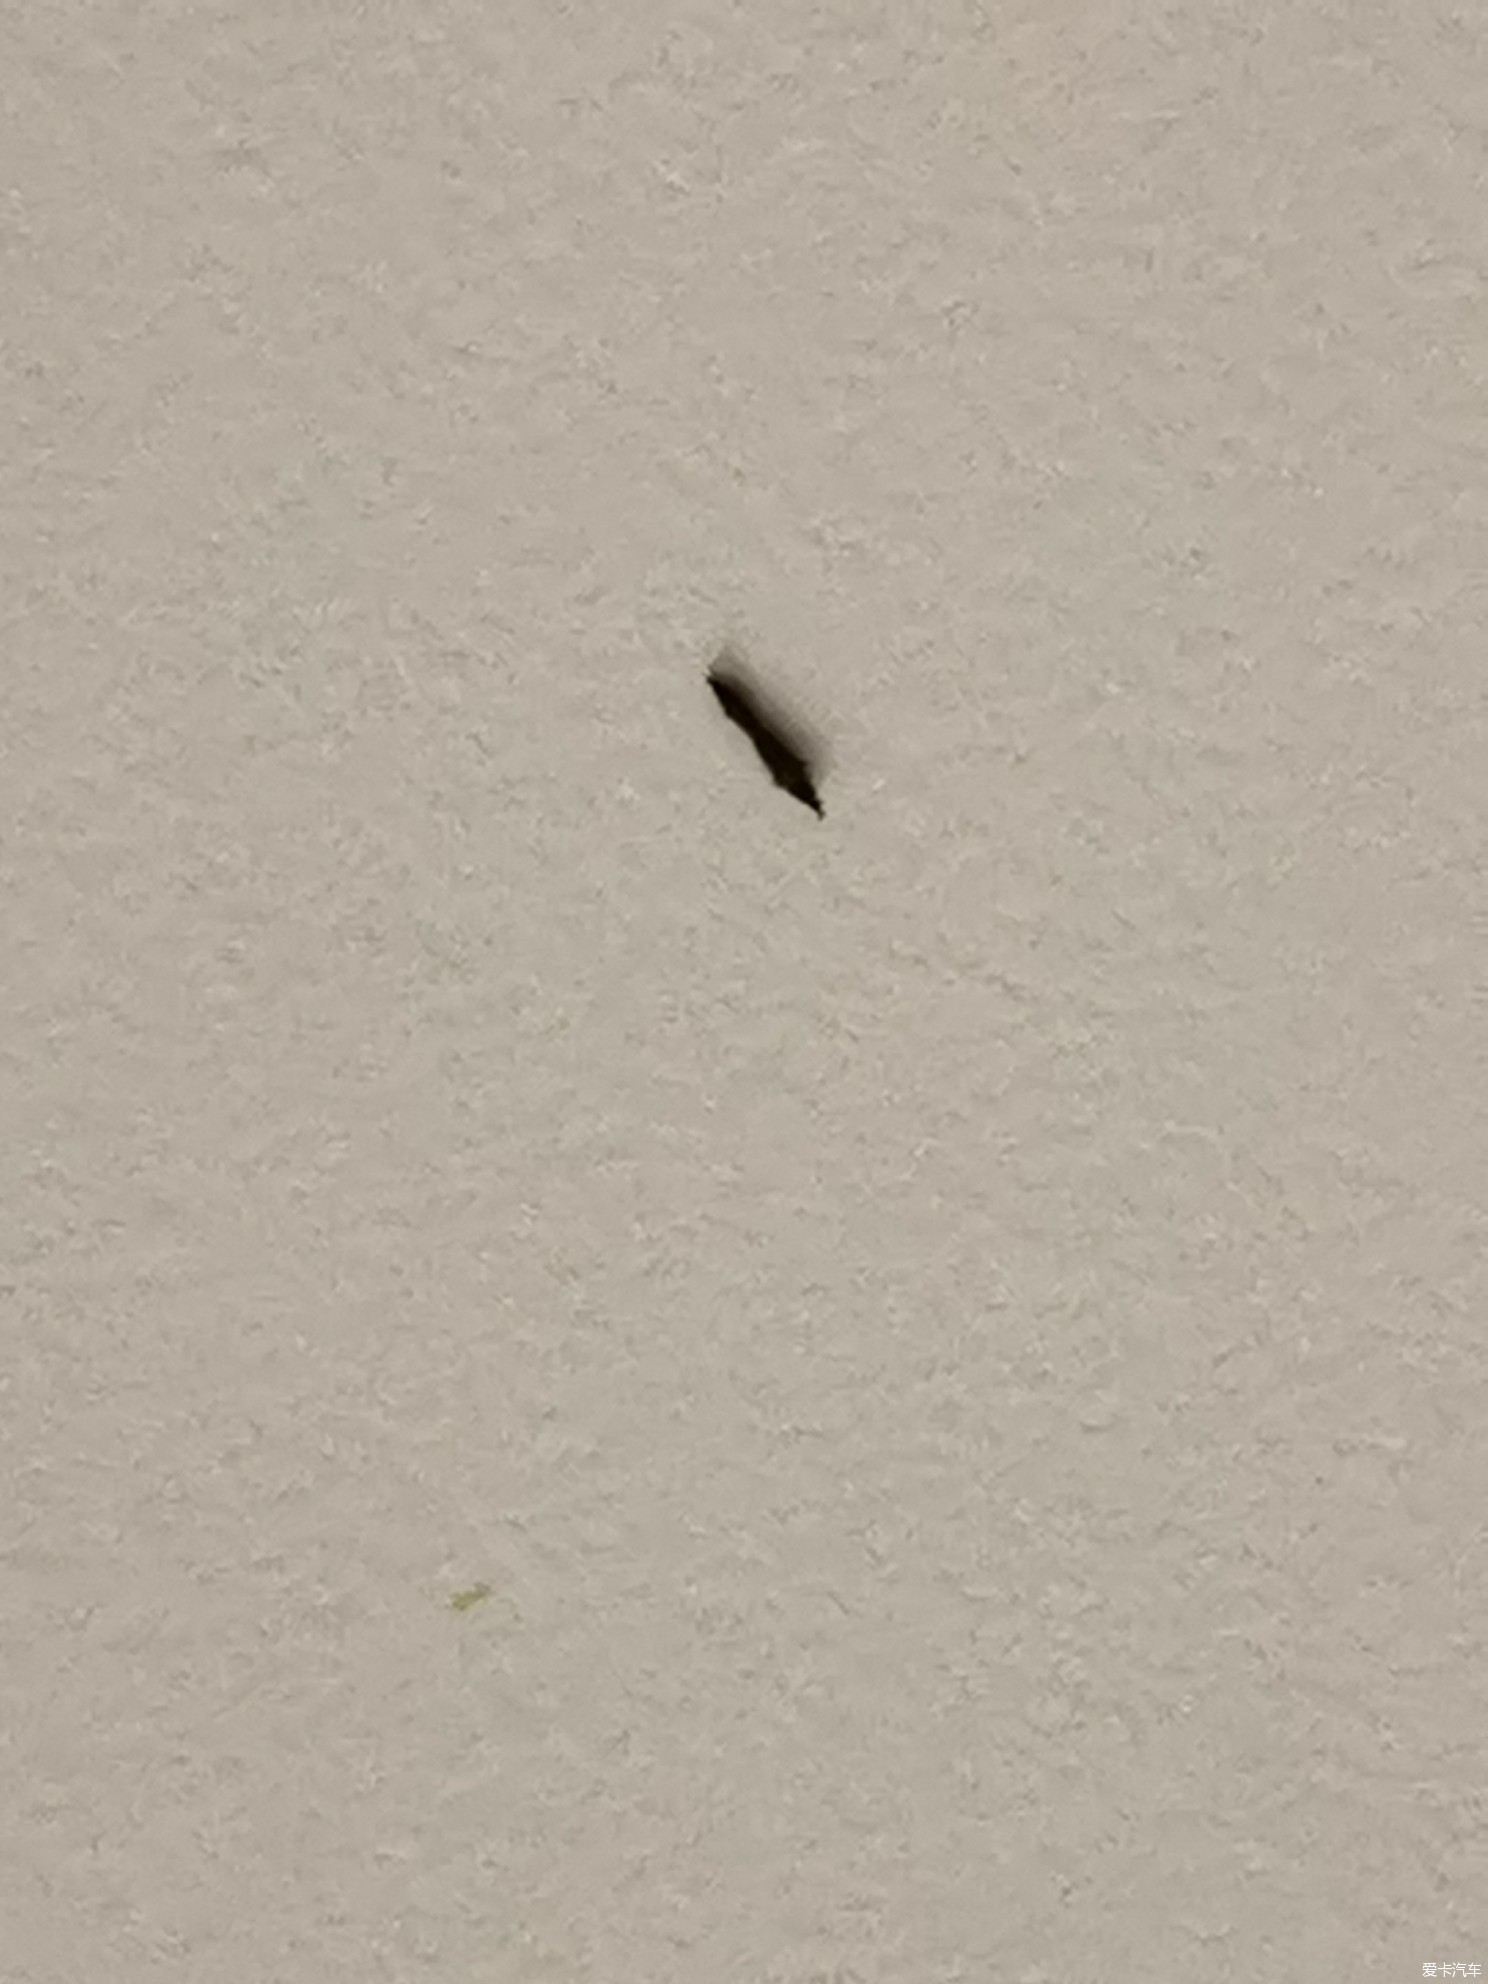 天花板发现这种黑色小虫子,大家帮忙看看是什么虫啊?